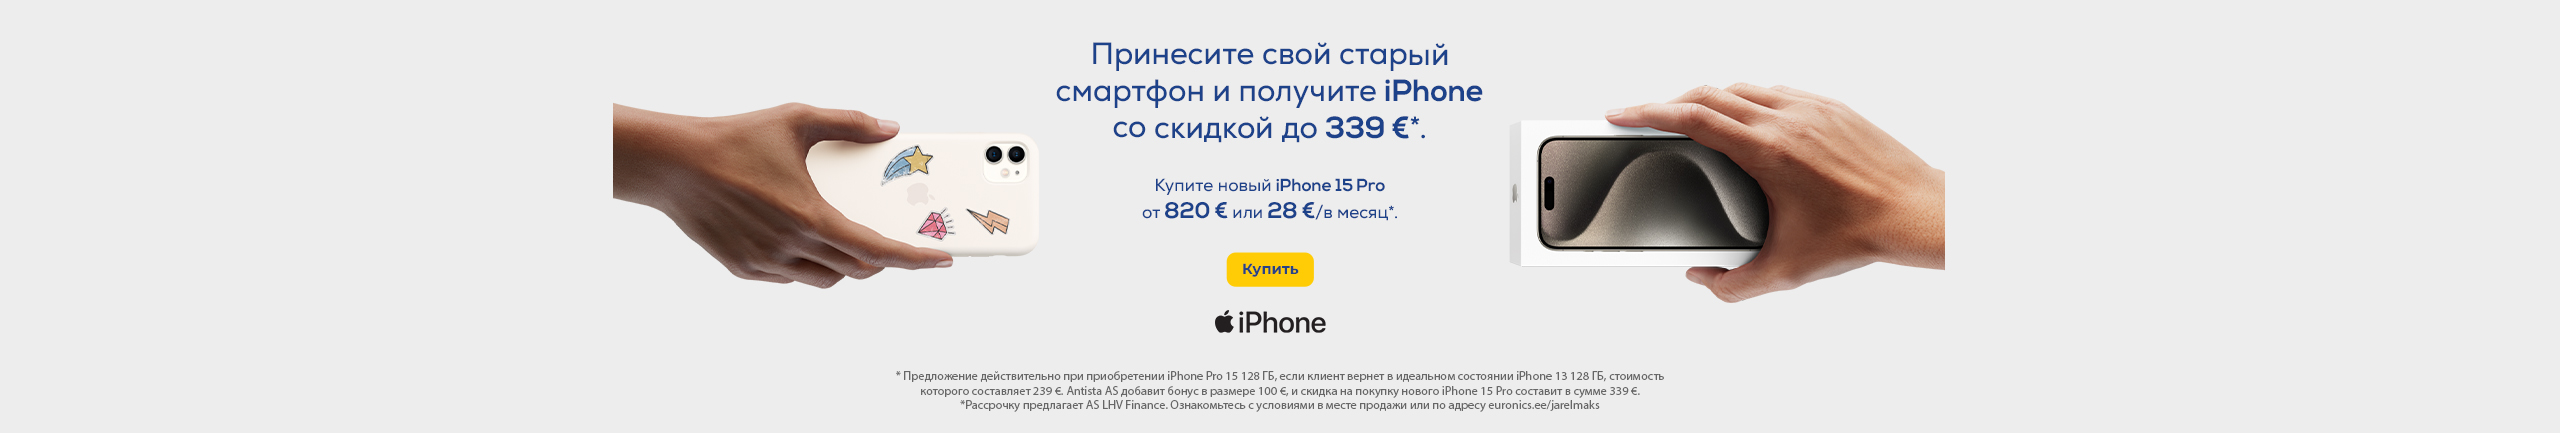 Кампания двойного выкупа Apple iPhone